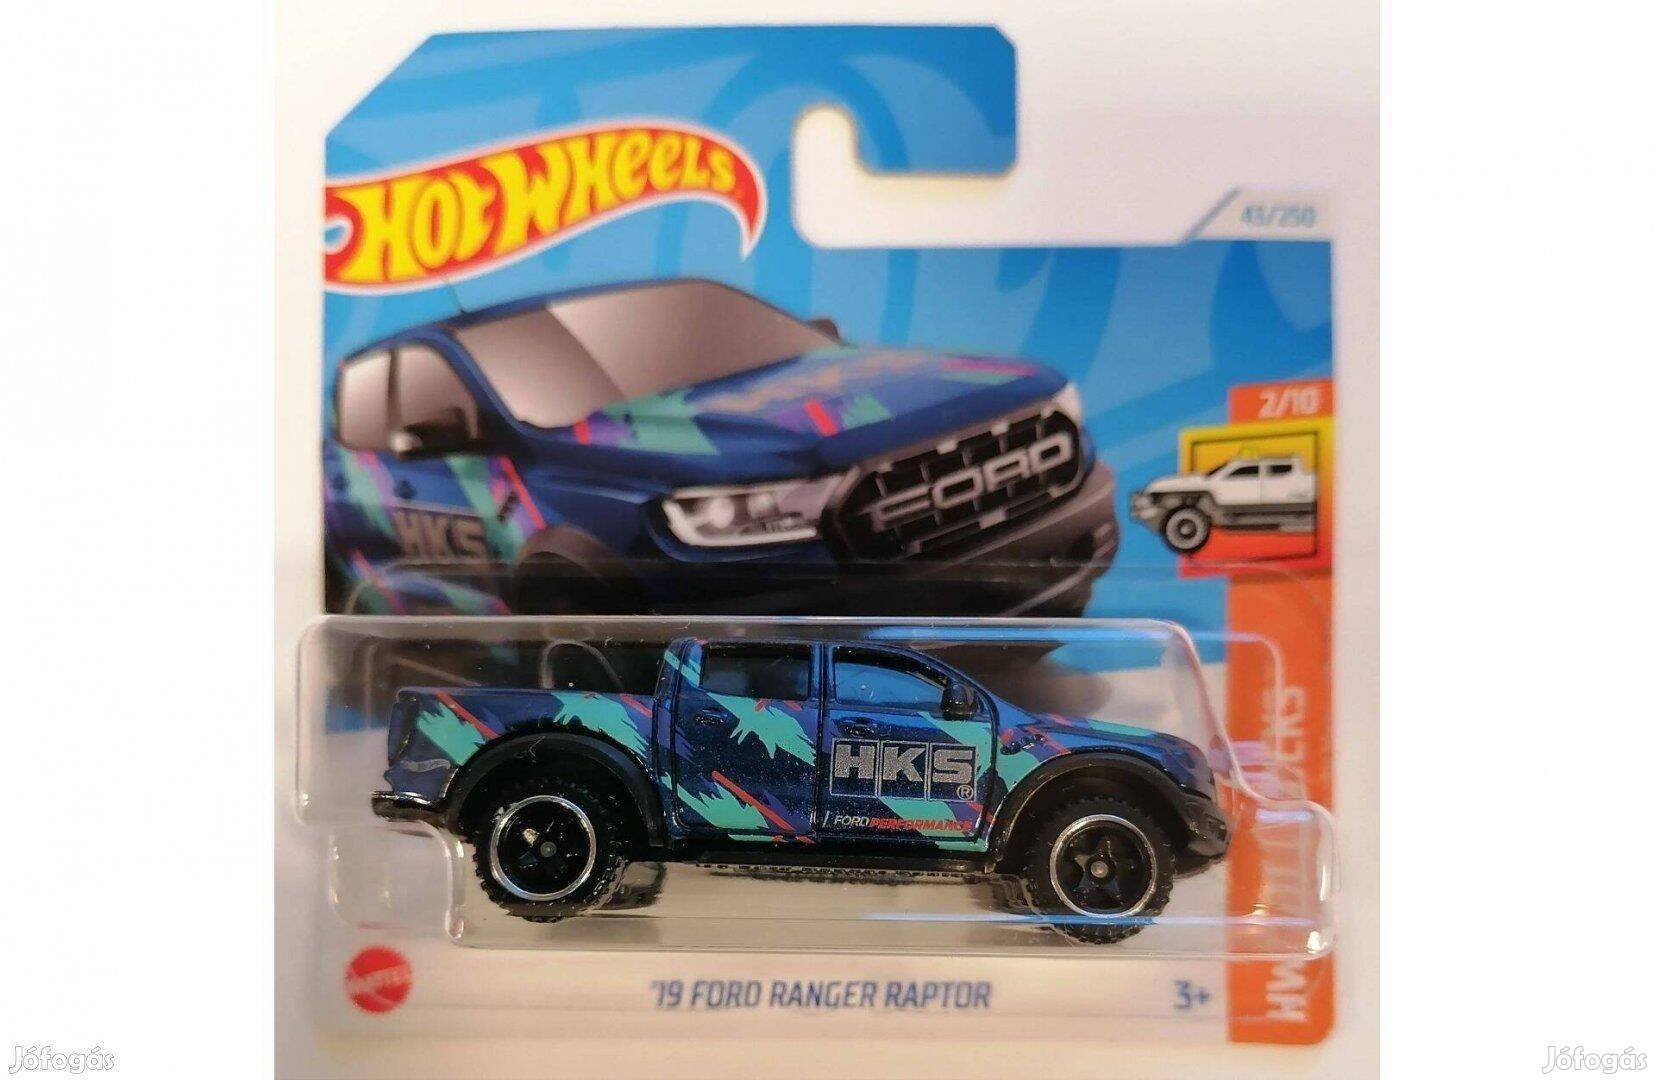 Hot Wheels '19 Ford Ranger Raptor HKS Blue